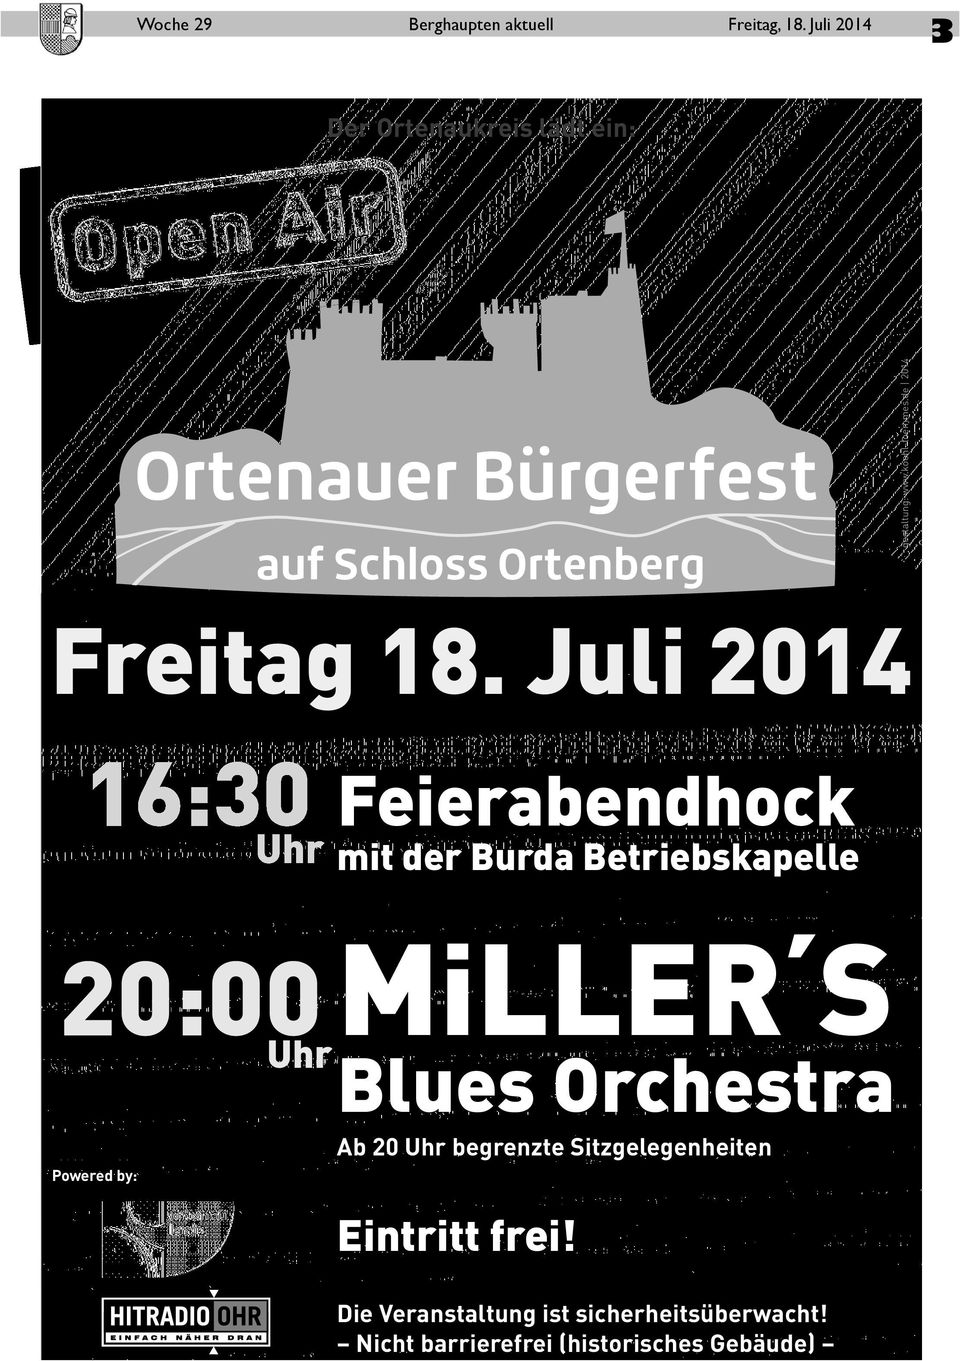 Juli 2014 16:30 Uhr Feierabendhock mit der Burda Betriebskapelle 20:00 Uhr MiLLER S Blues